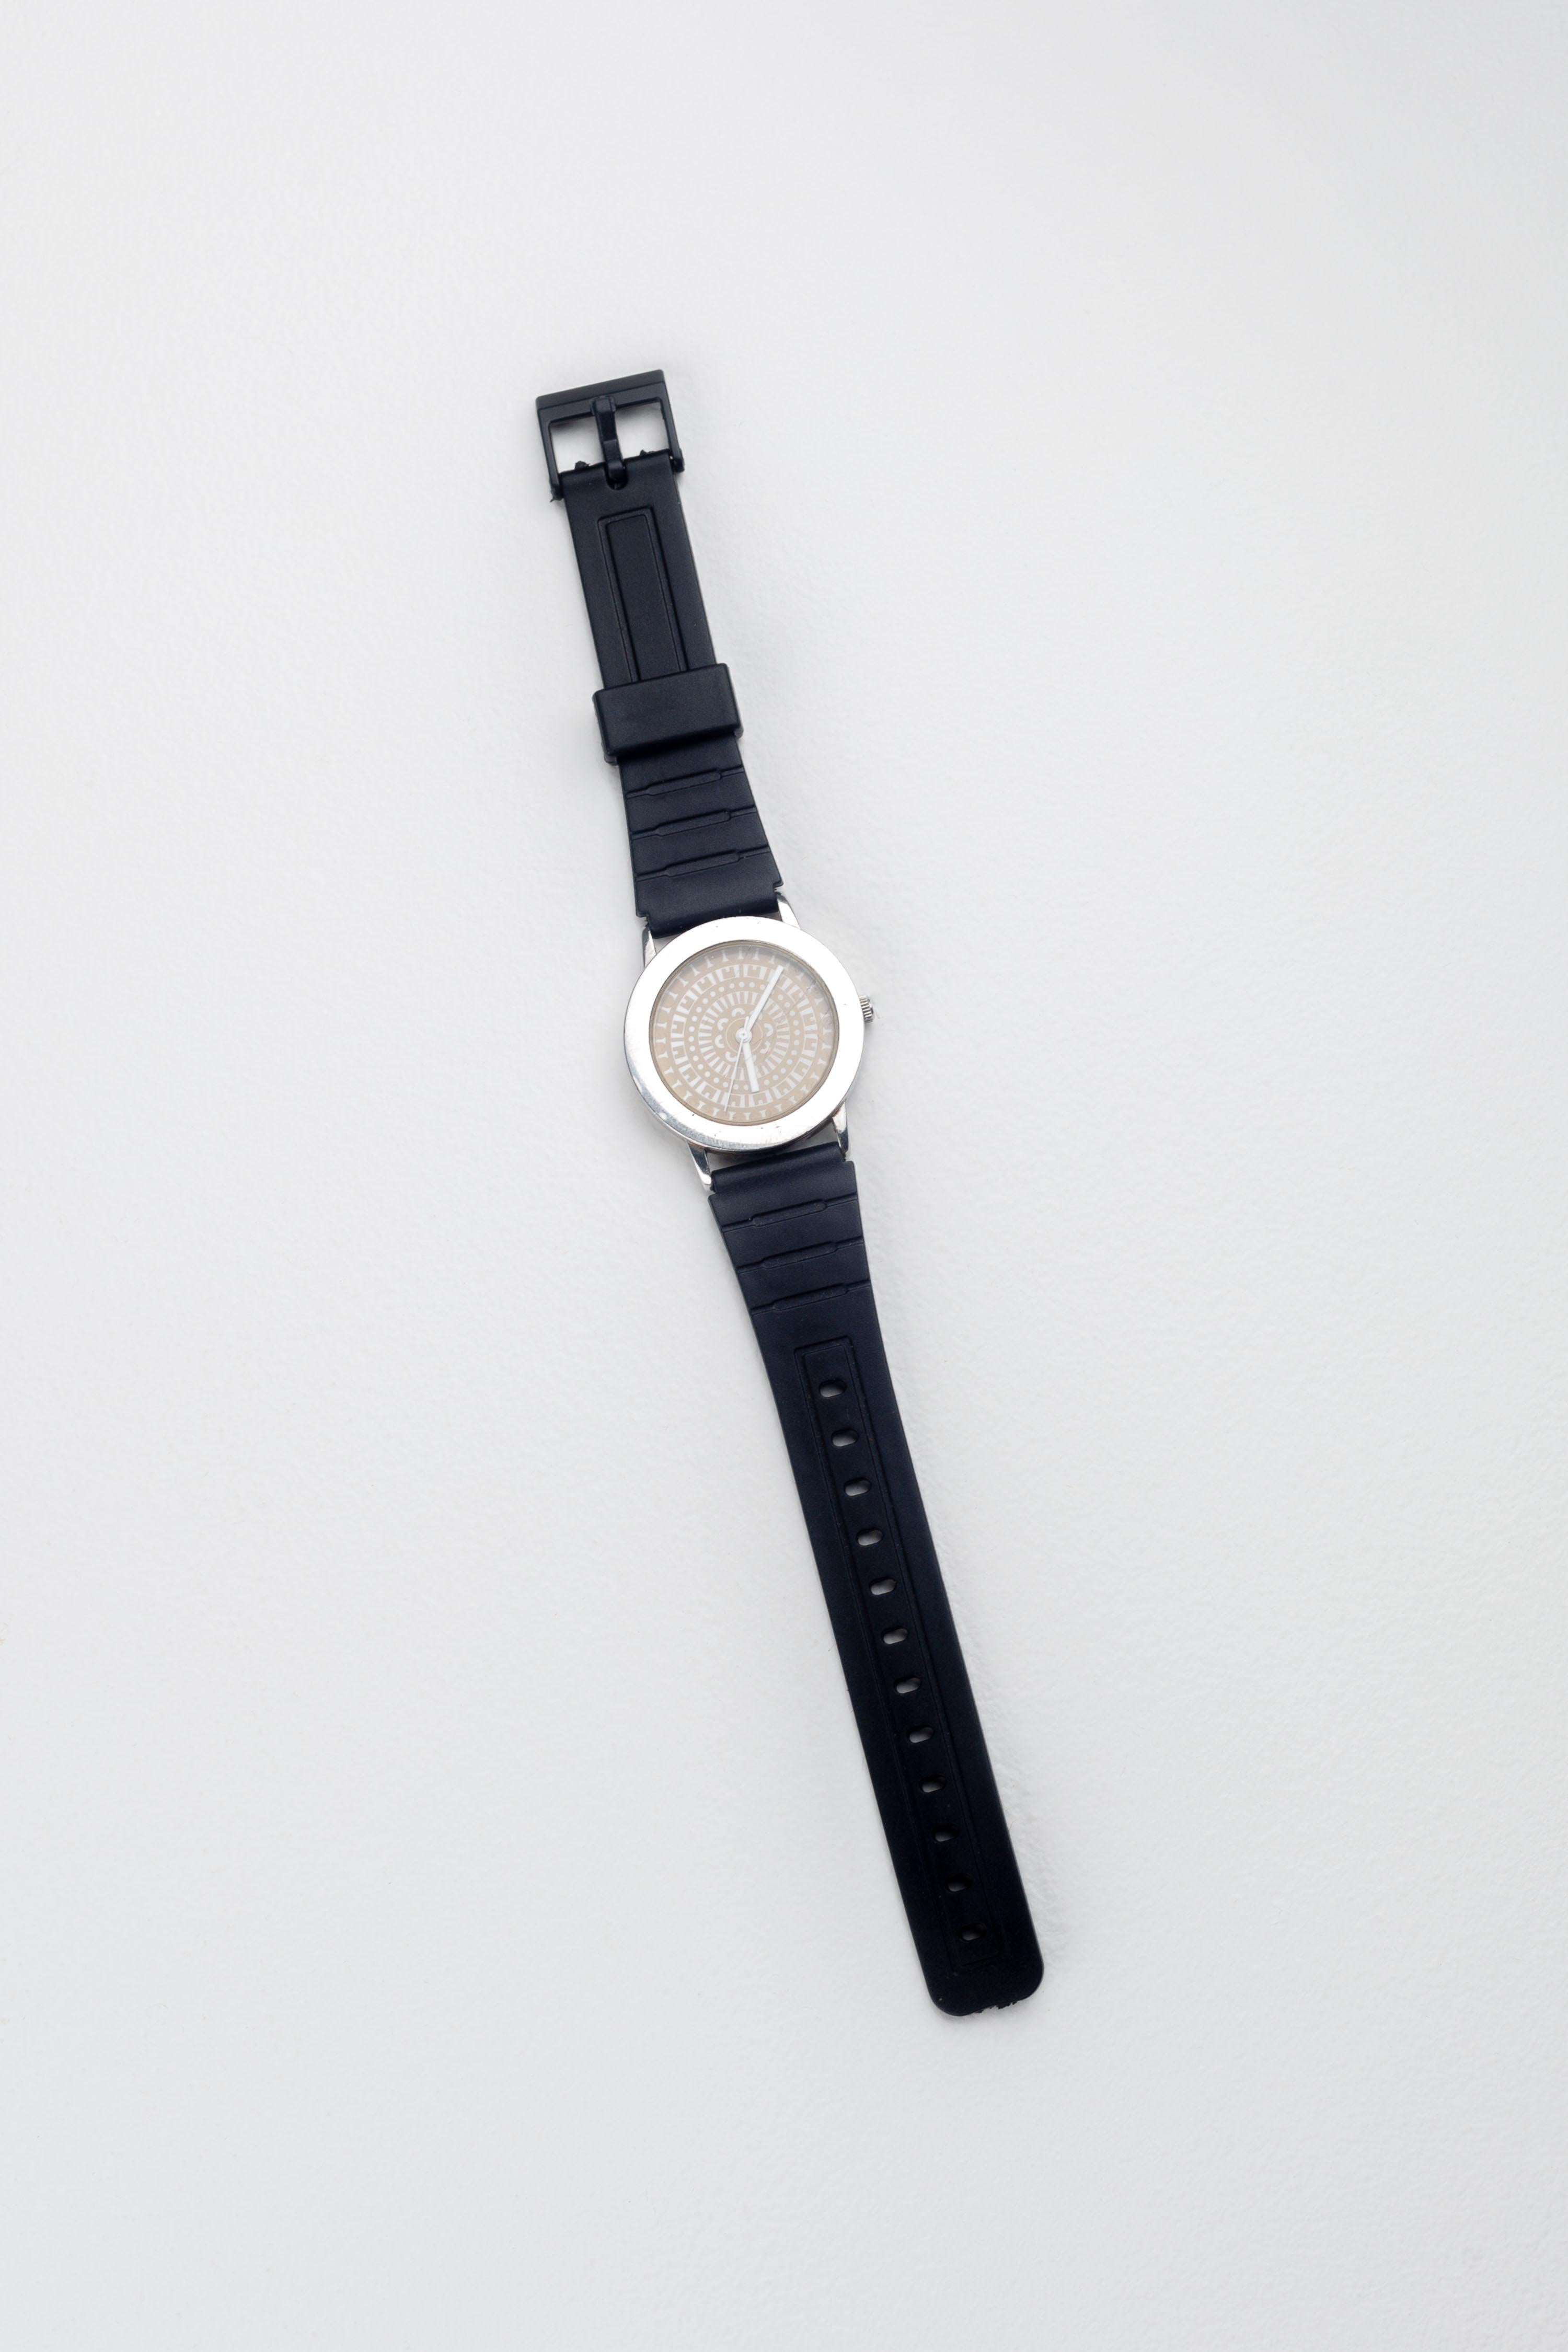 Alessandro Mendini Wristwatch for Studio Alchimia, Museo Alchimia 1986 For Sale 8